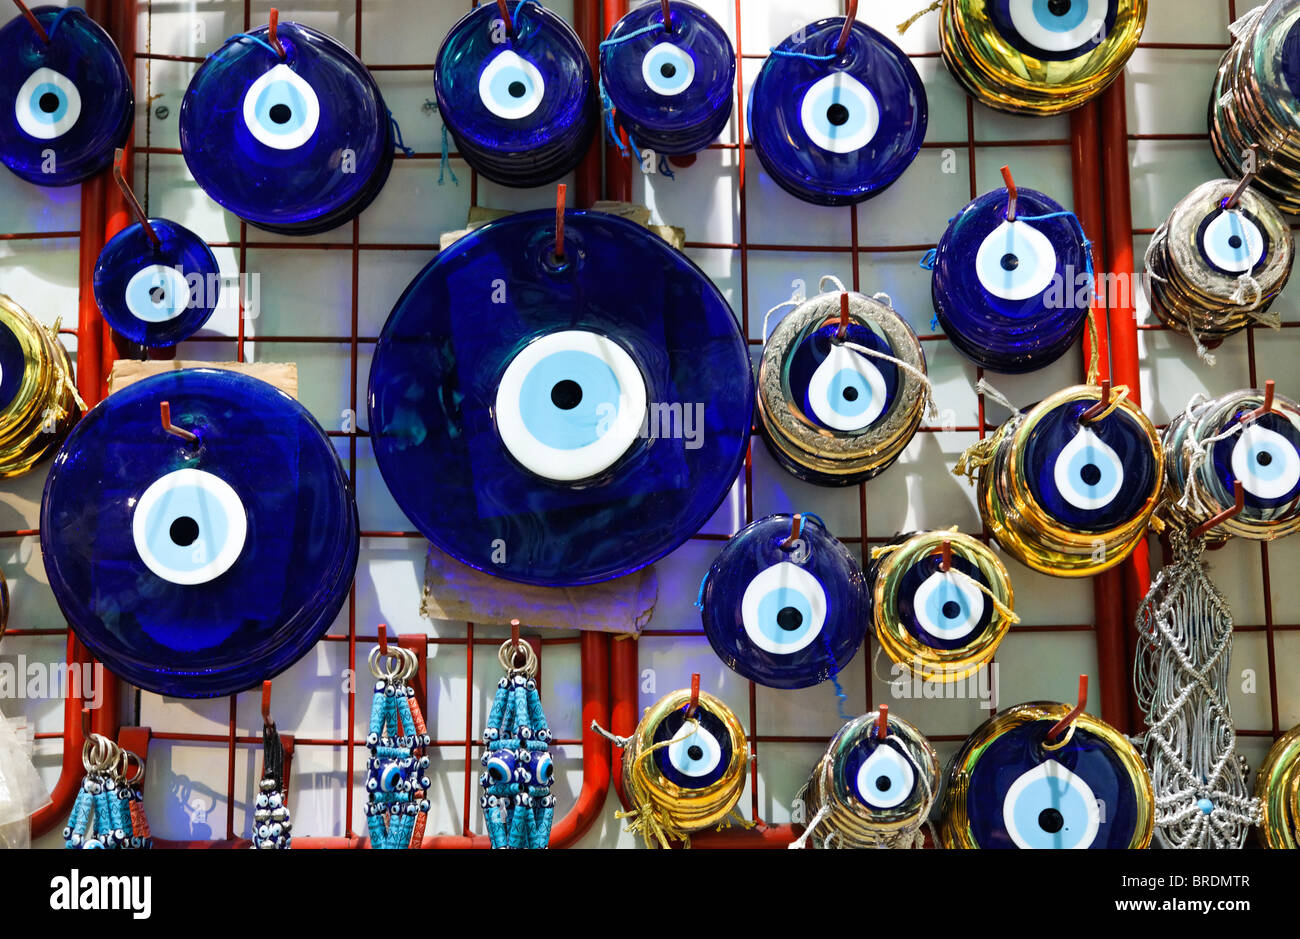 Böse Augen (Nazar Boncuk) zum Verkauf, großer Basar, Istanbul, Türkei  Stockfotografie - Alamy